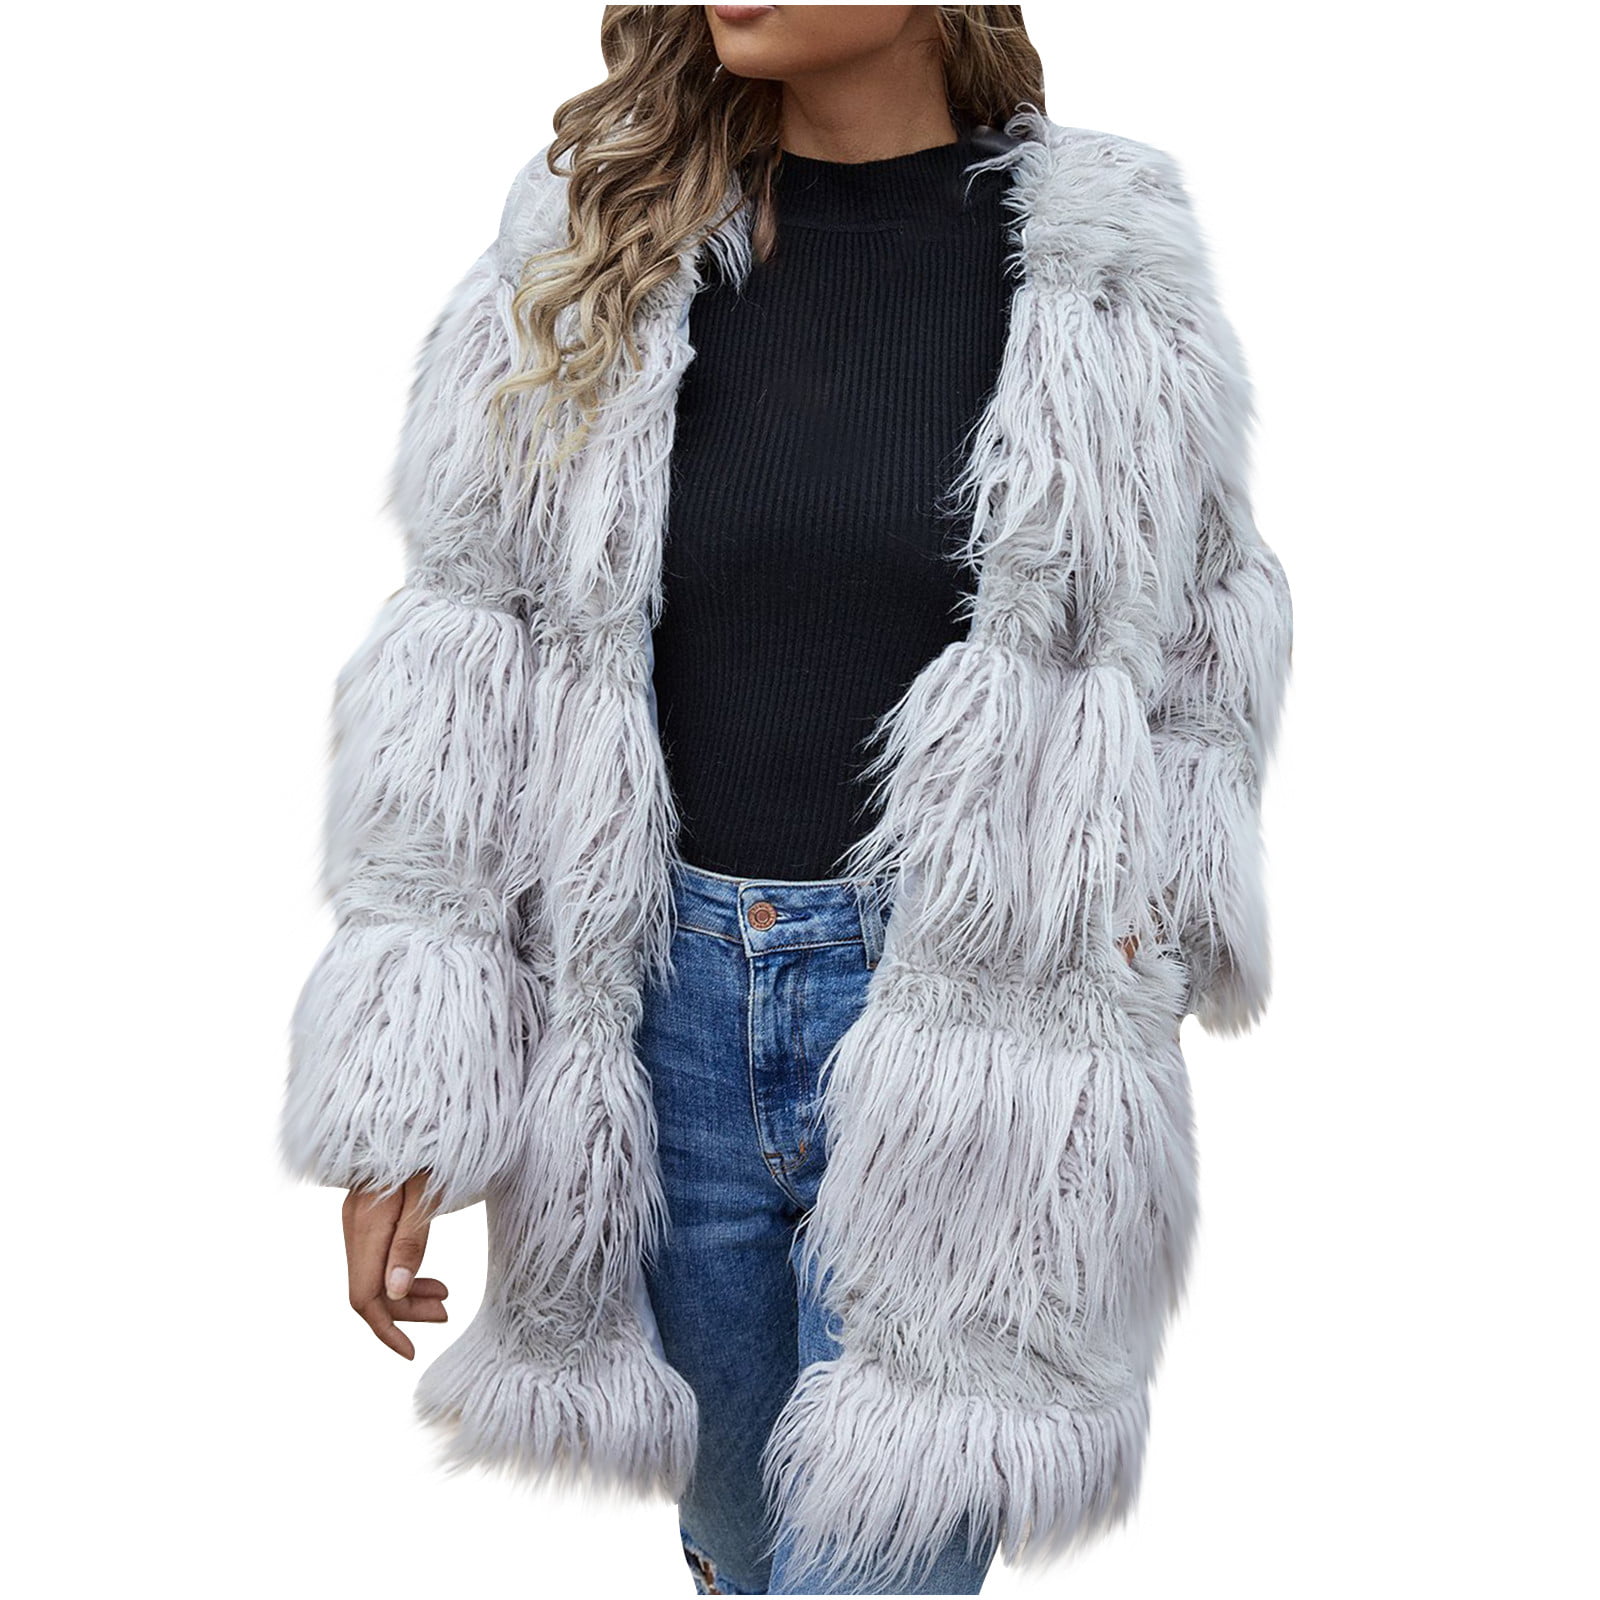 Yanvan Womens Casual Coats Faux Fur Pockets Fuzzy Warm Winter Oversized Outwear Long Coat 